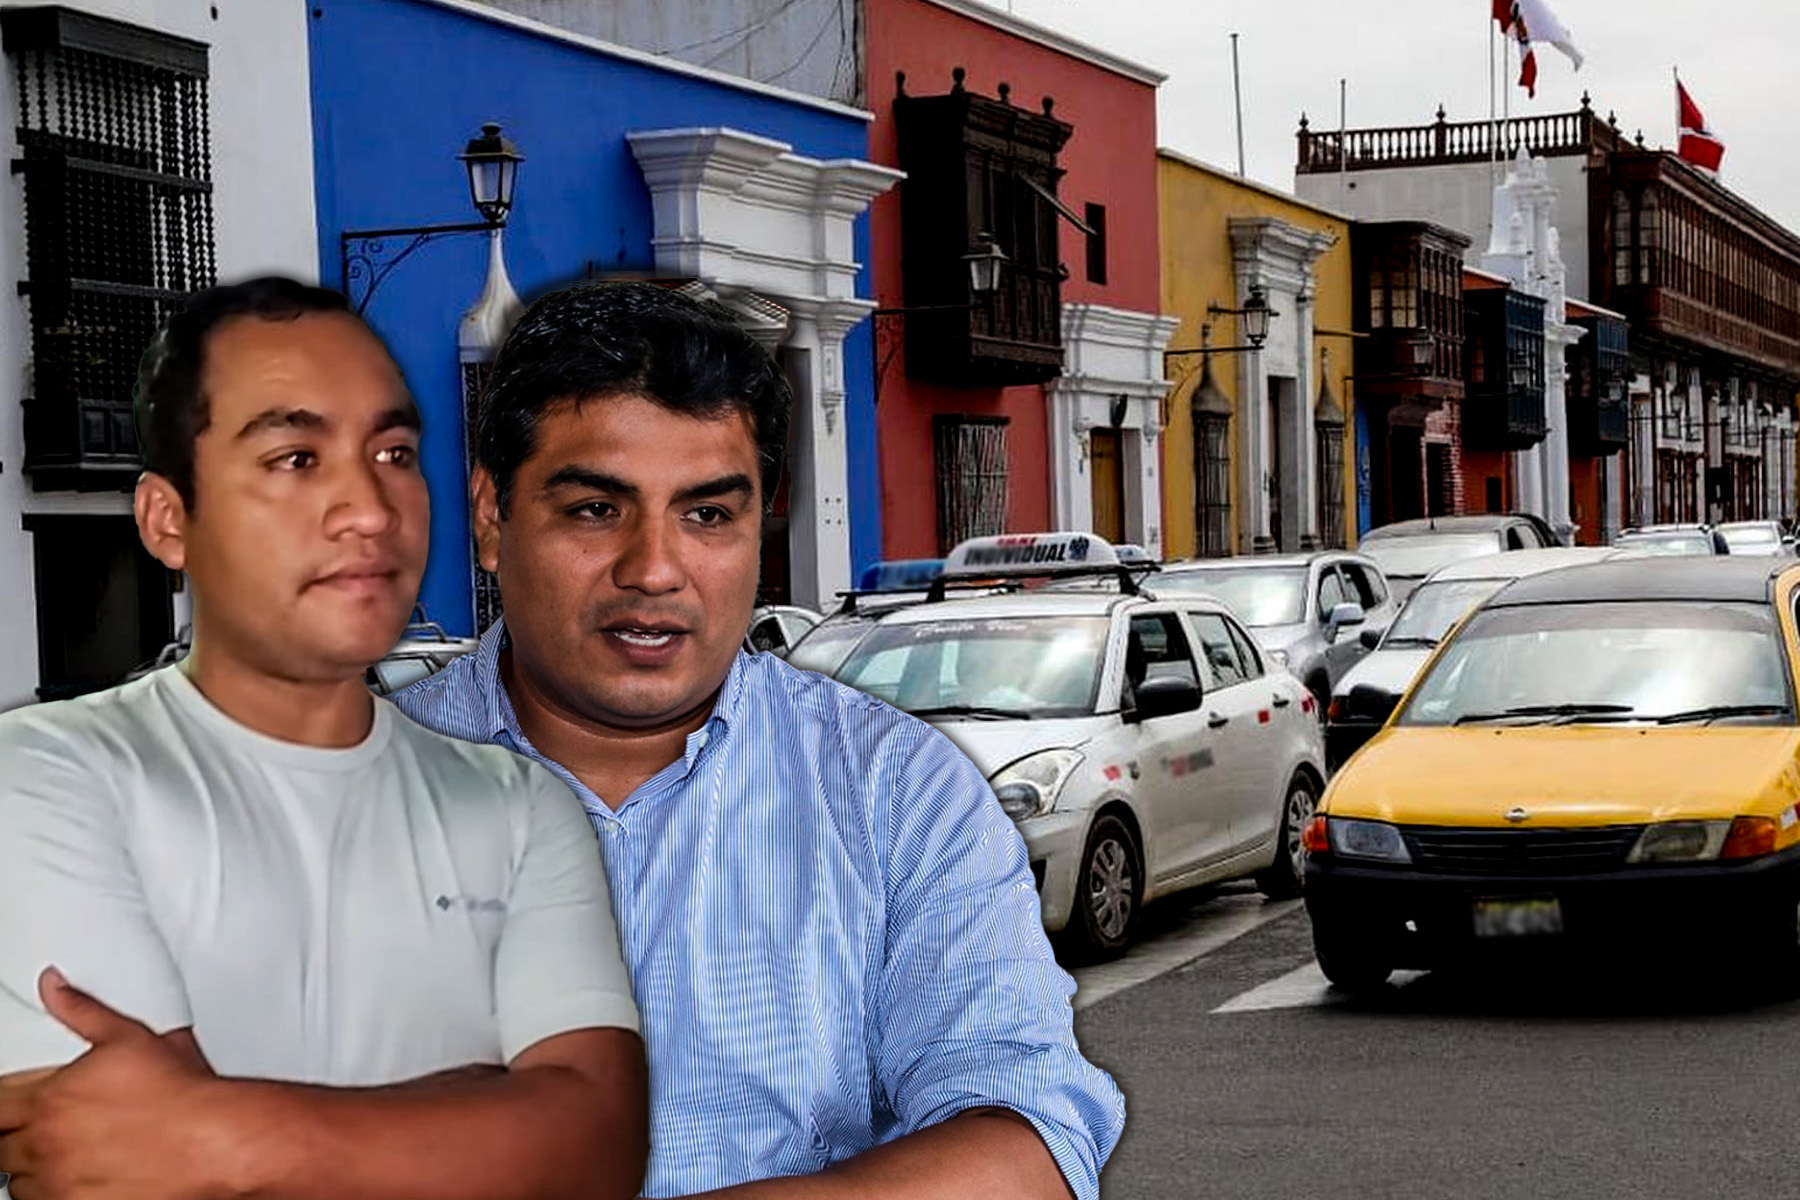 Alcalde de Trujillo y regidor Toribio recibieron amenazas de muerte